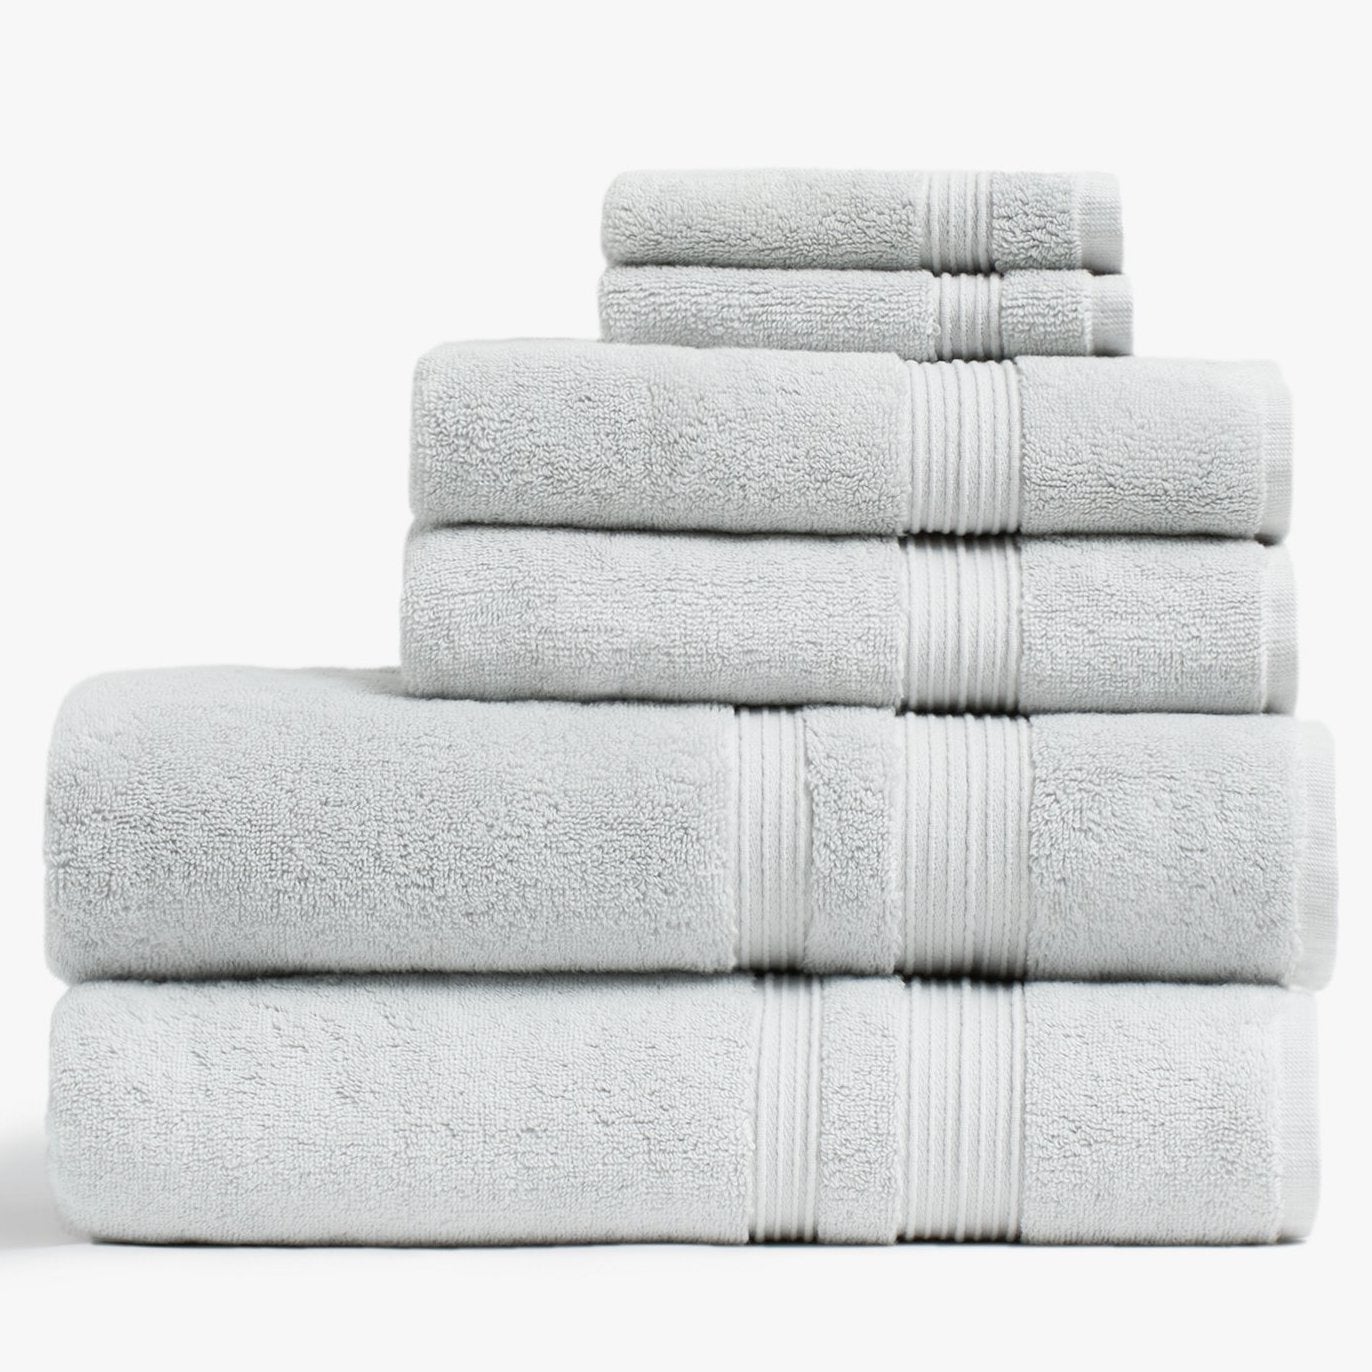 classic-turkish-cotton-towels_mineral_lightbox_040_2048x